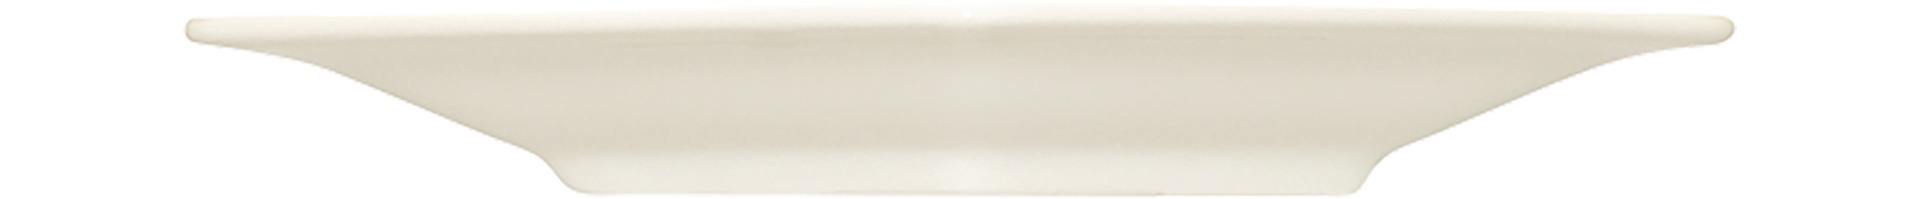 Teller flach Raute 340 x 237 mm